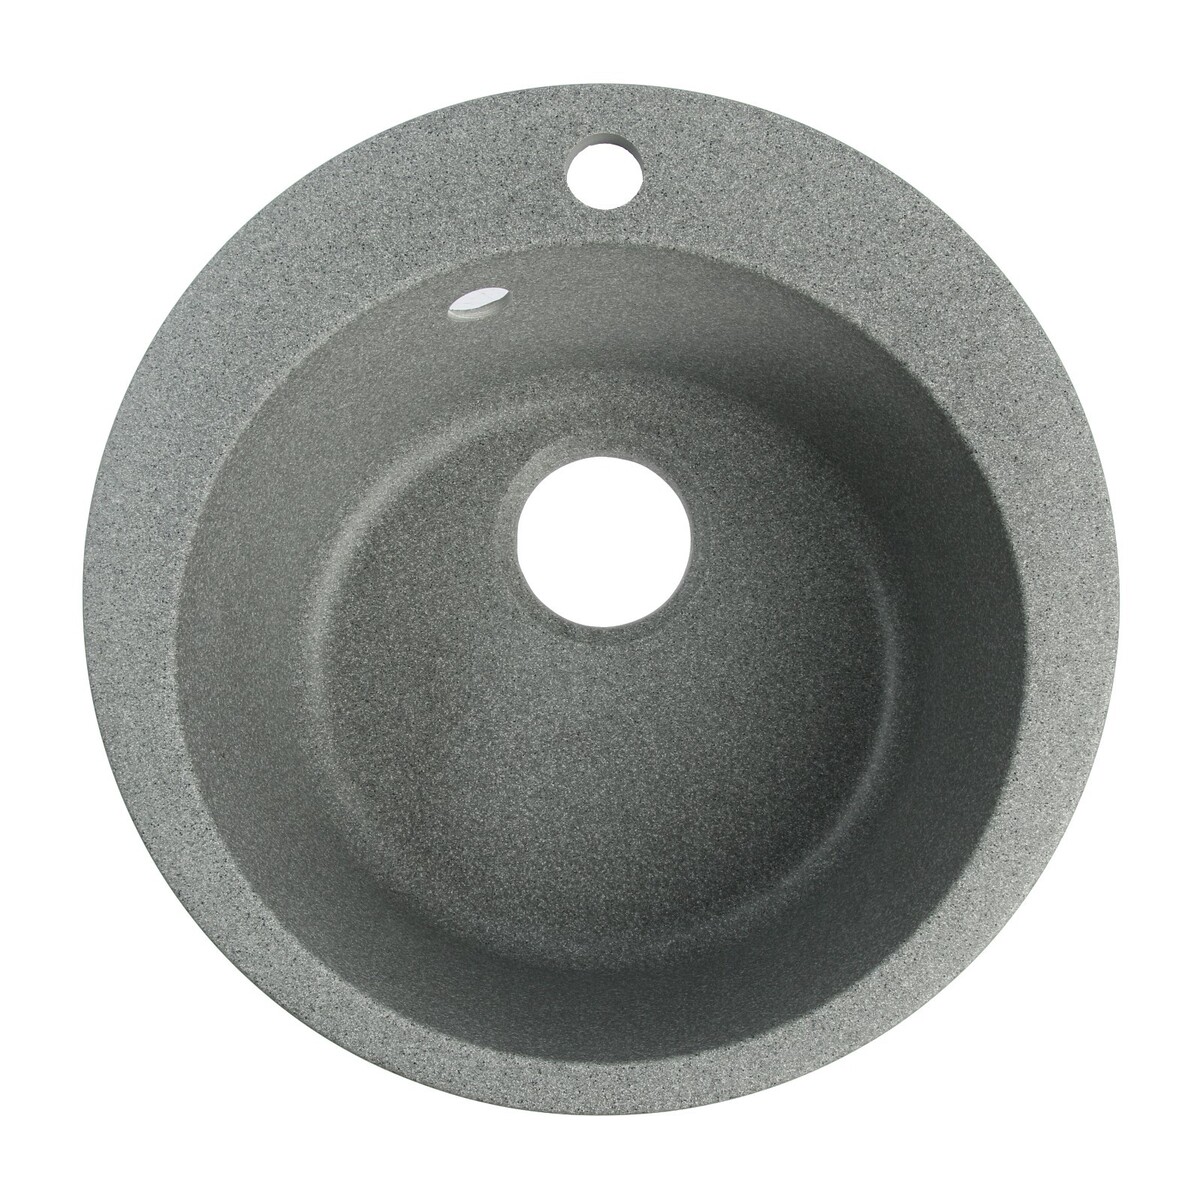 Мойка для кухни из камня zein 30/q8, d=475 мм, круглая, перелив, цвет темно-серый